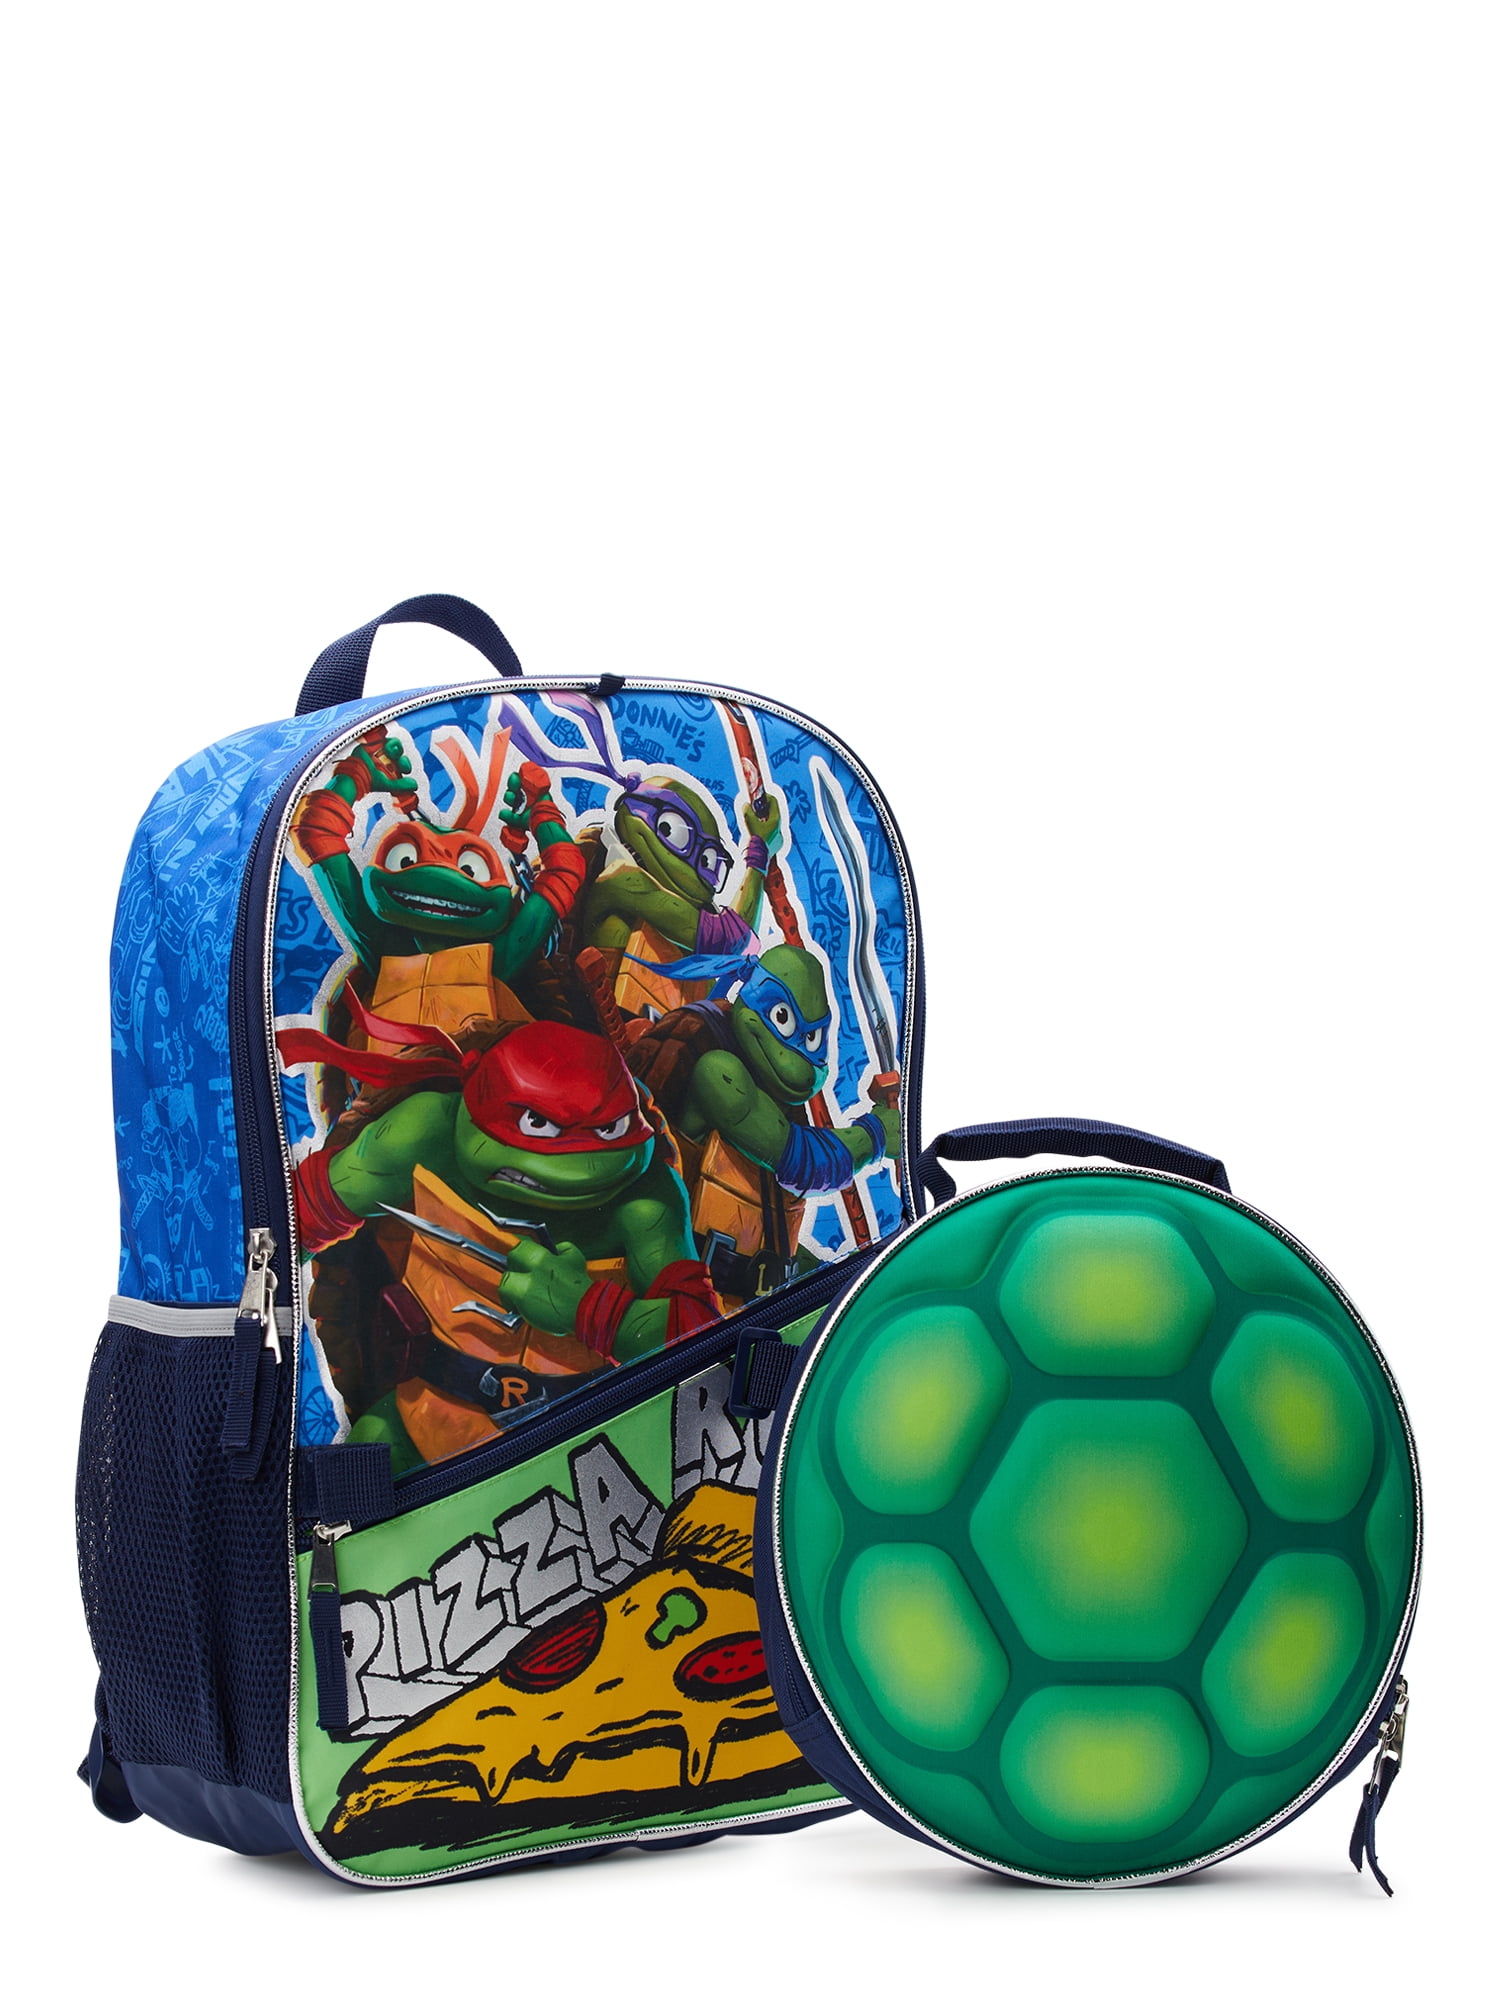 Nick Jr Teenage Mutant Ninja Turtles Cowabunga 2 Pack Creeper Set